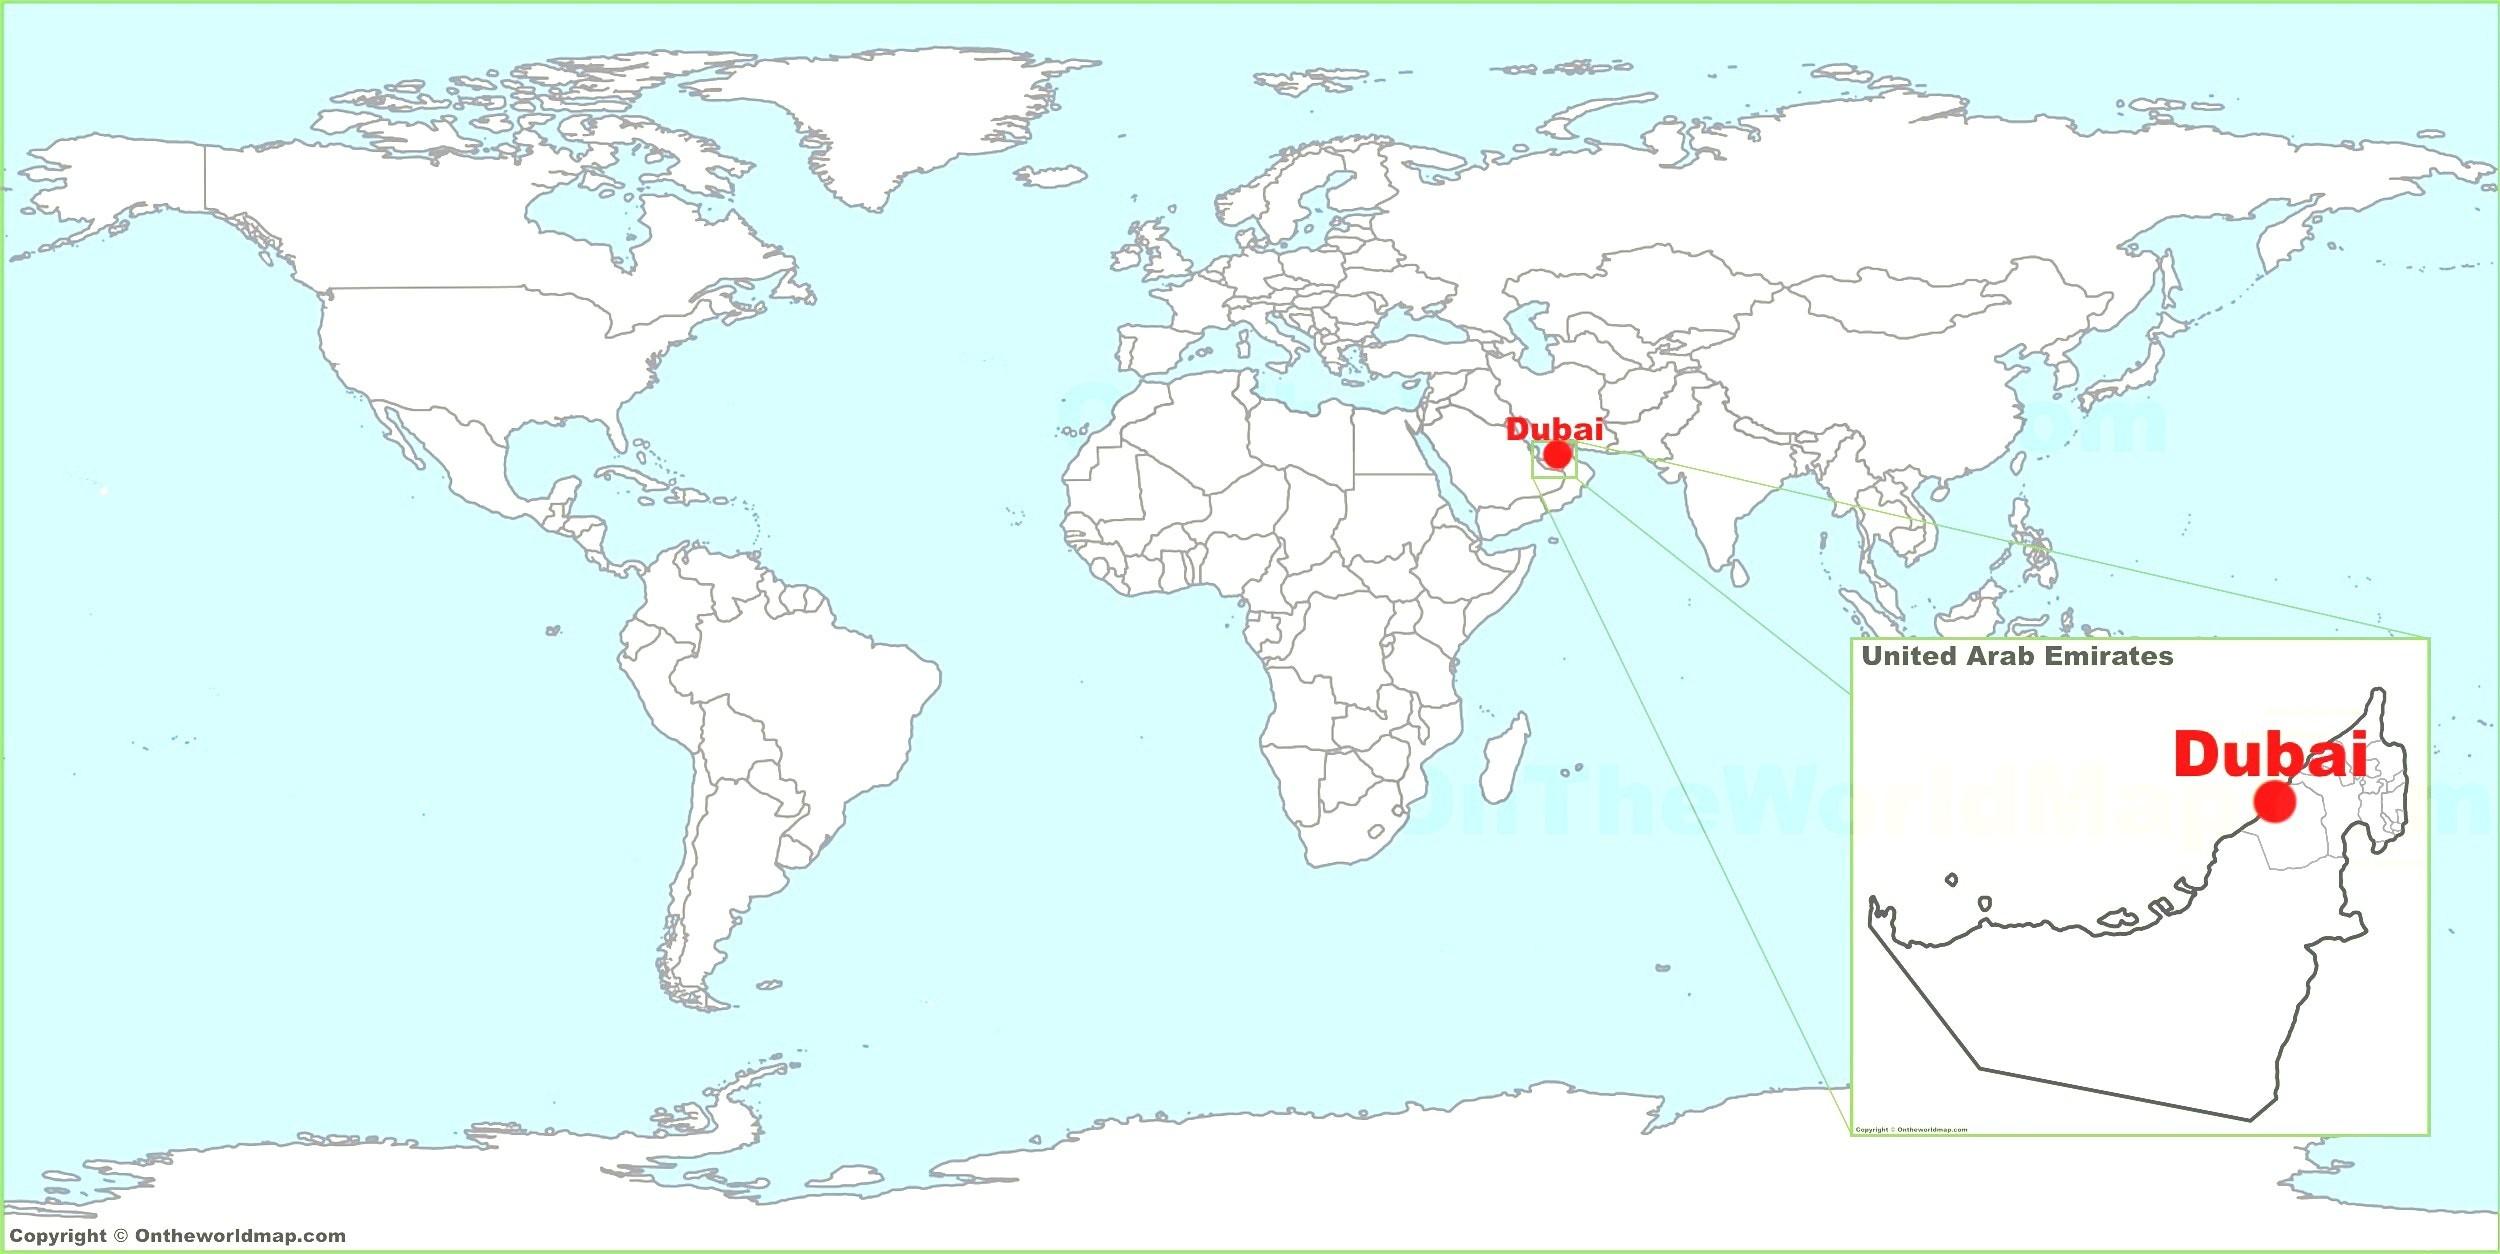 ドバイ世界地図 ドバイ地図の世界 アラブ首長国連邦